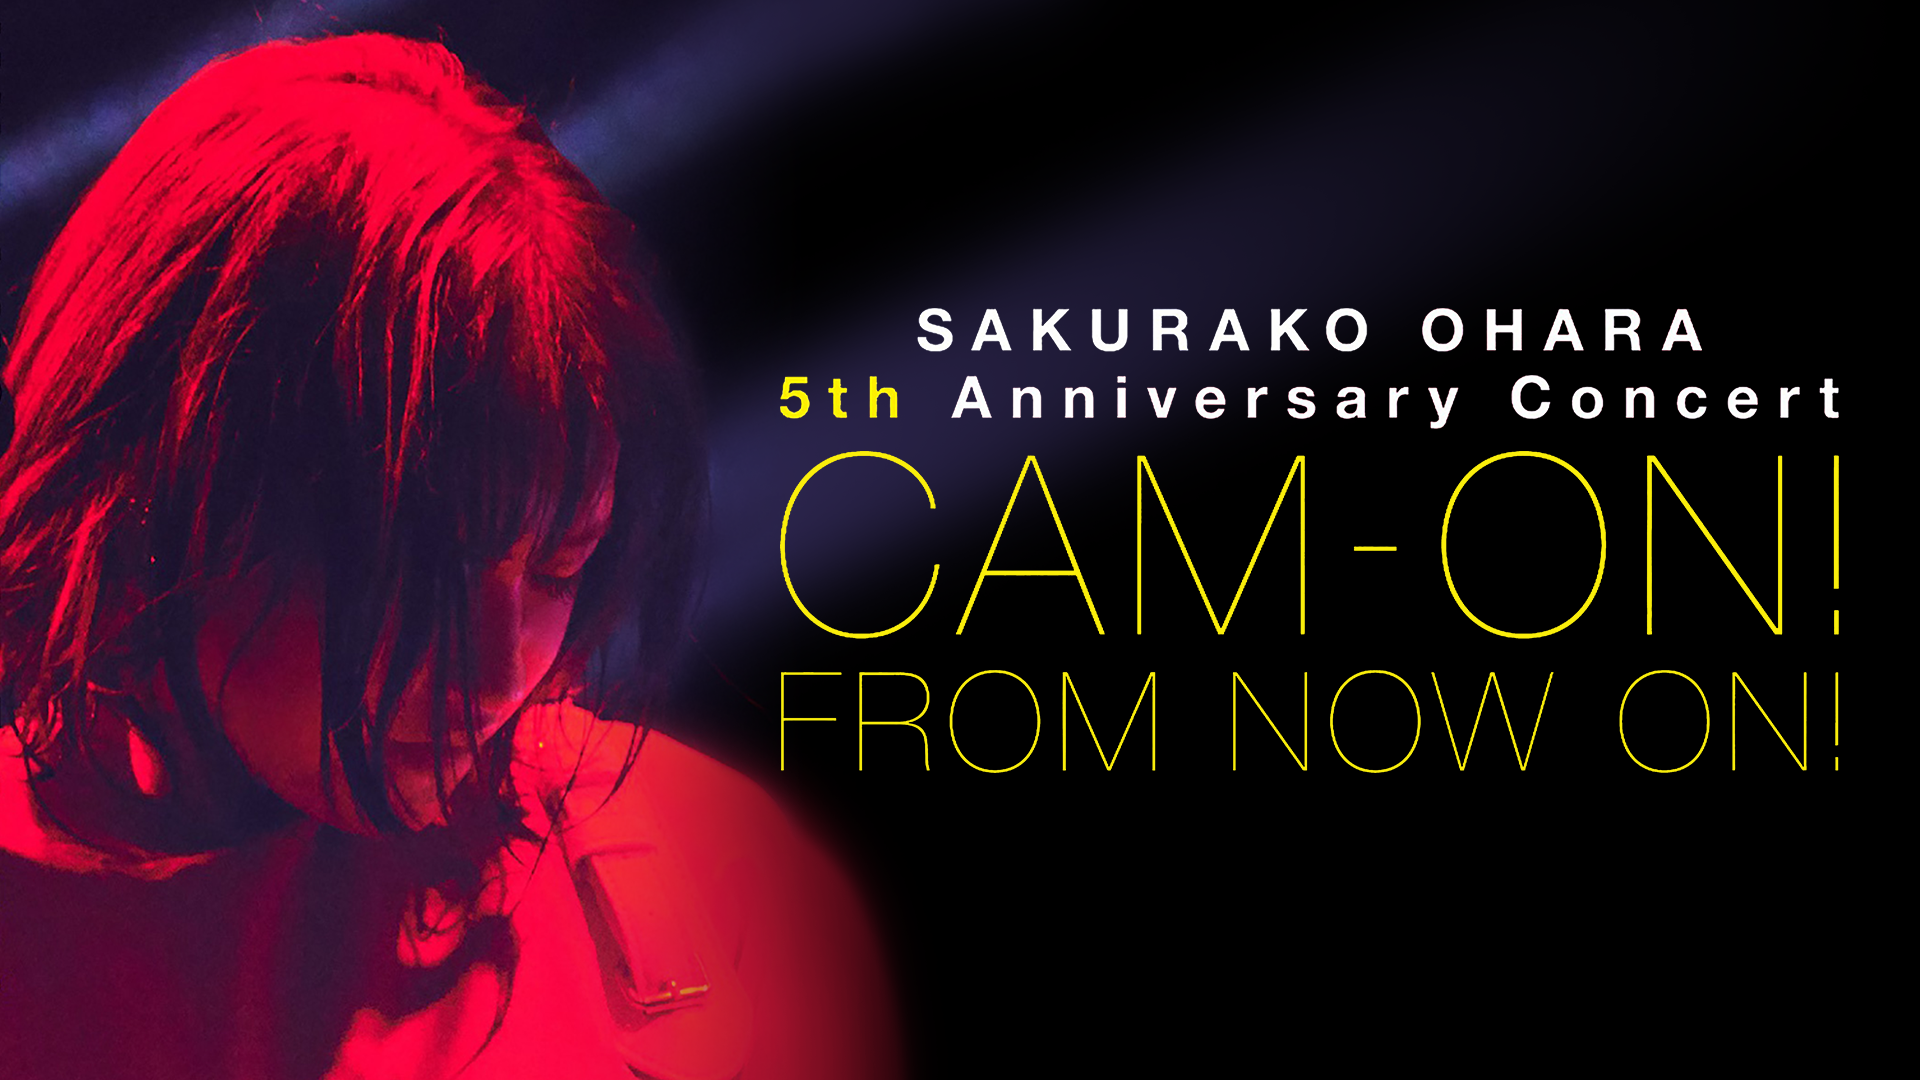 大原櫻子 5th Anniversary コンサート「CAM-ON! ～FROM NOW ON!～」(音楽・ライブ / 2019) - 動画配信 |  U-NEXT 31日間無料トライアル